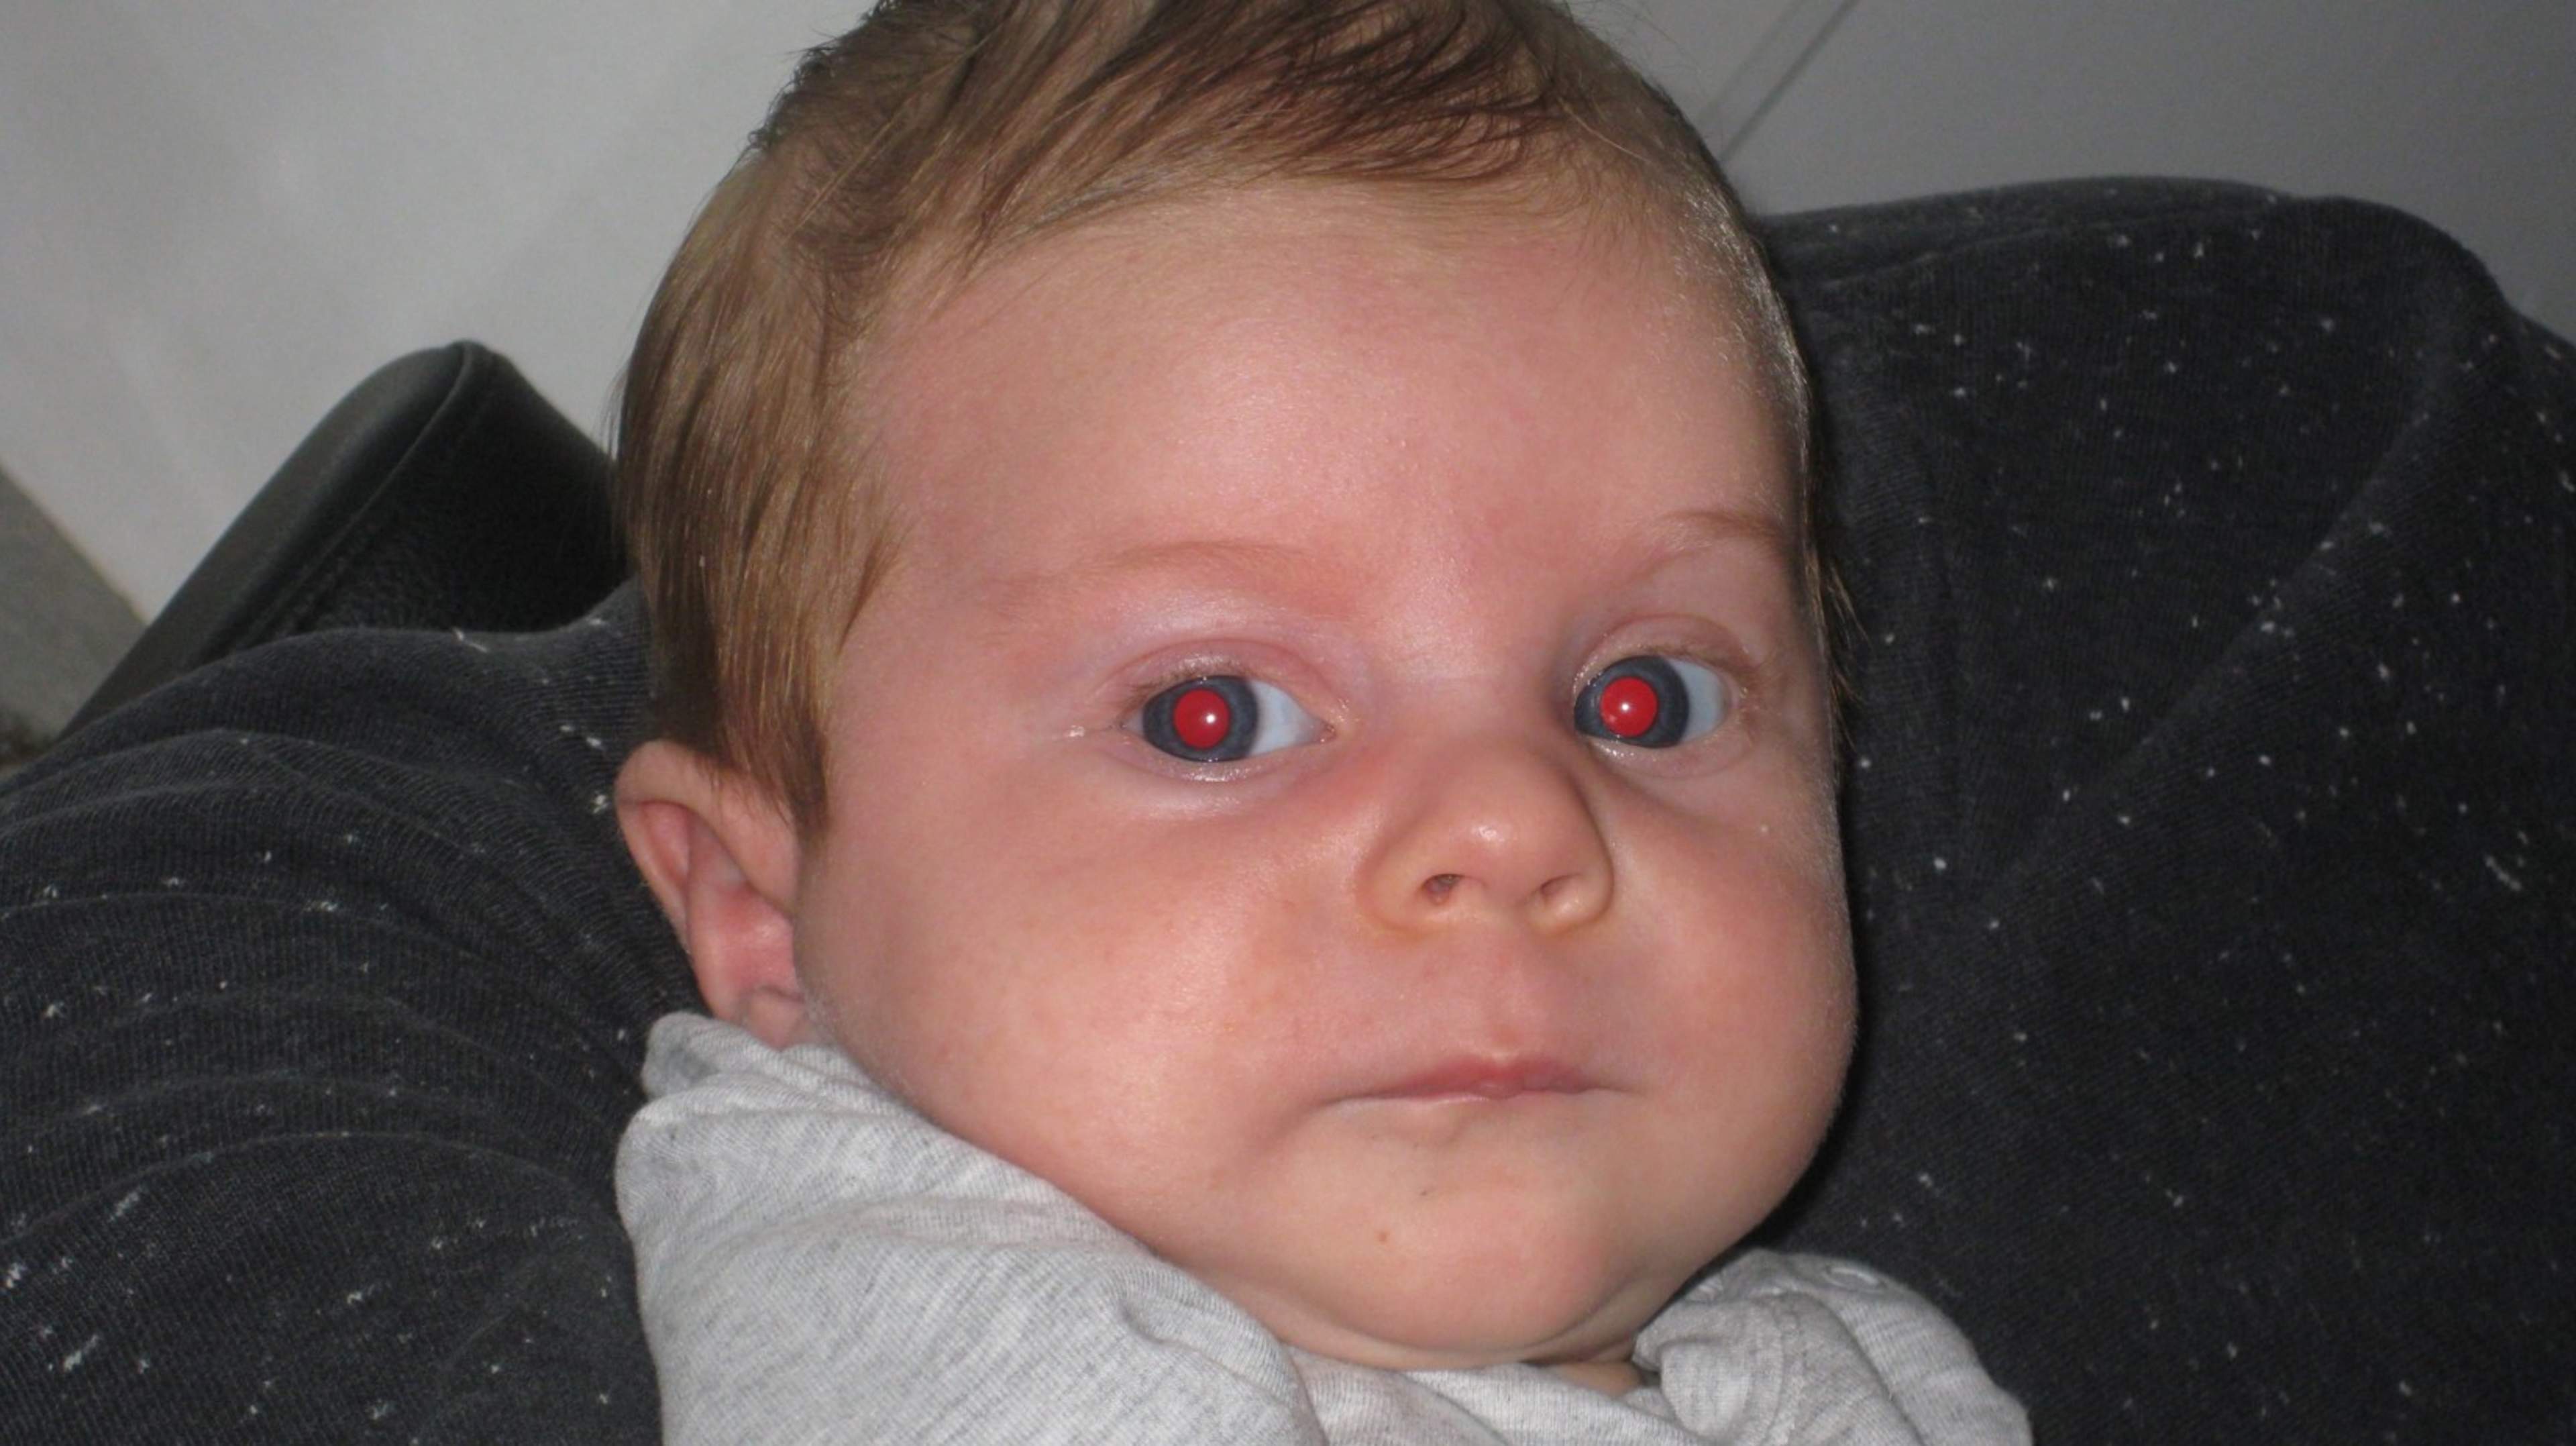 Vaaleaihoisen lapsen oranssinpunainen punaheijaste silmistä.